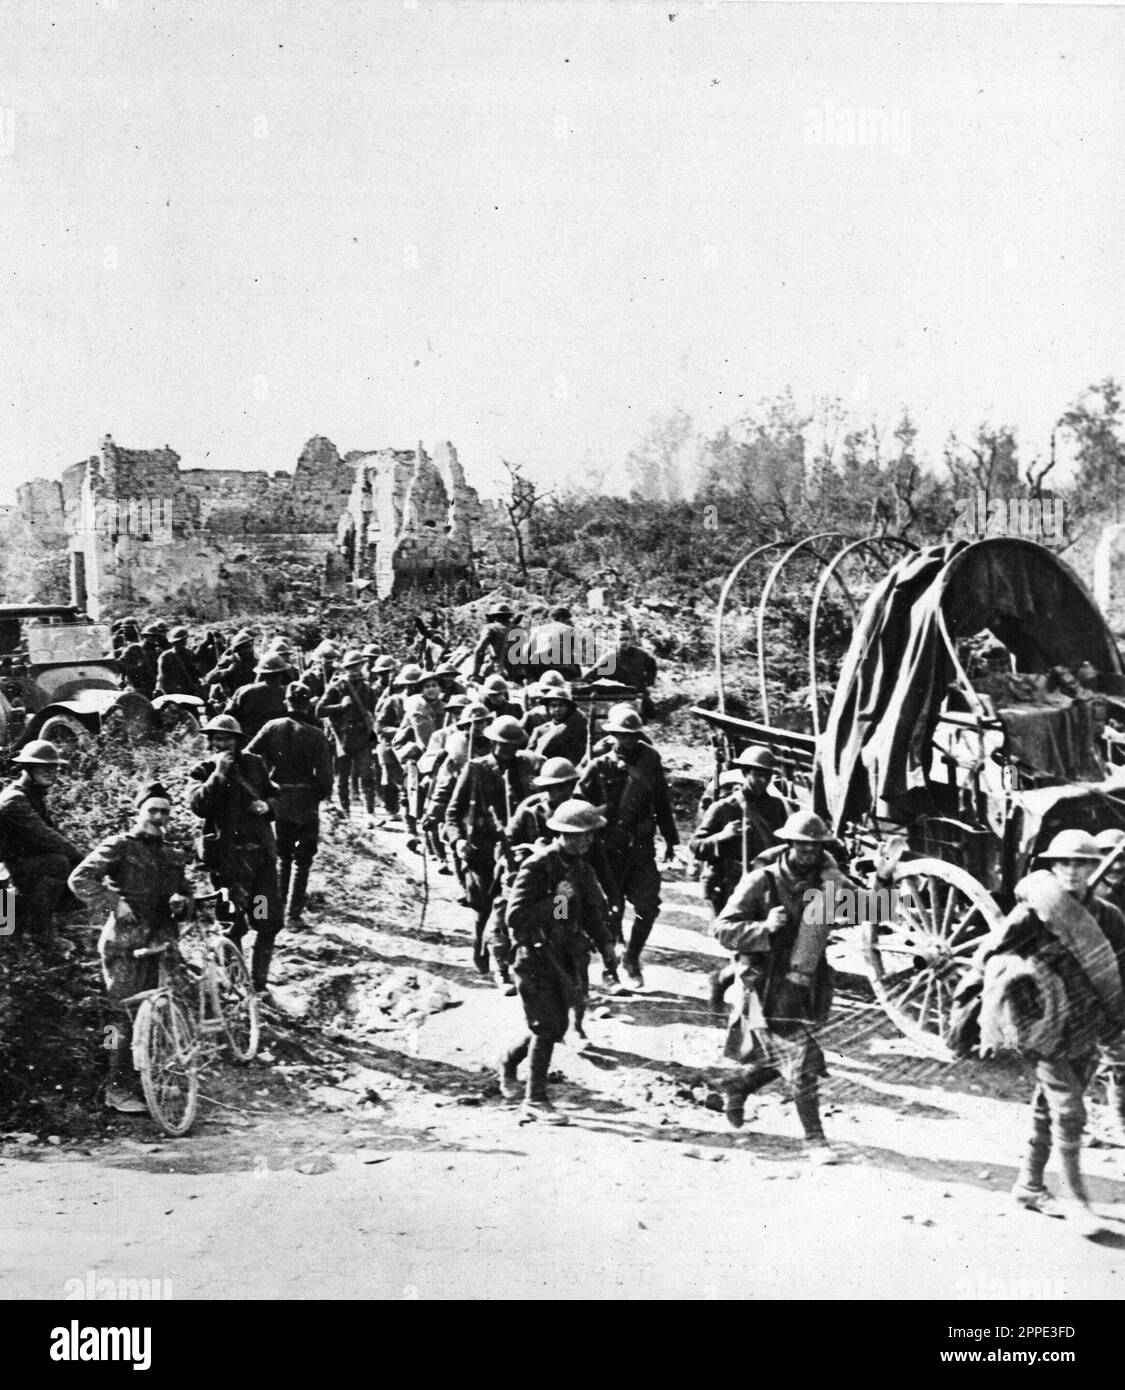 Soldati americani marciano in Germania nel 1919 durante l'occupazione alleata della Renania. Dopo il WW1 gli Alleati occuparono la riva sinistra del Reno per 11 anni. Foto Stock